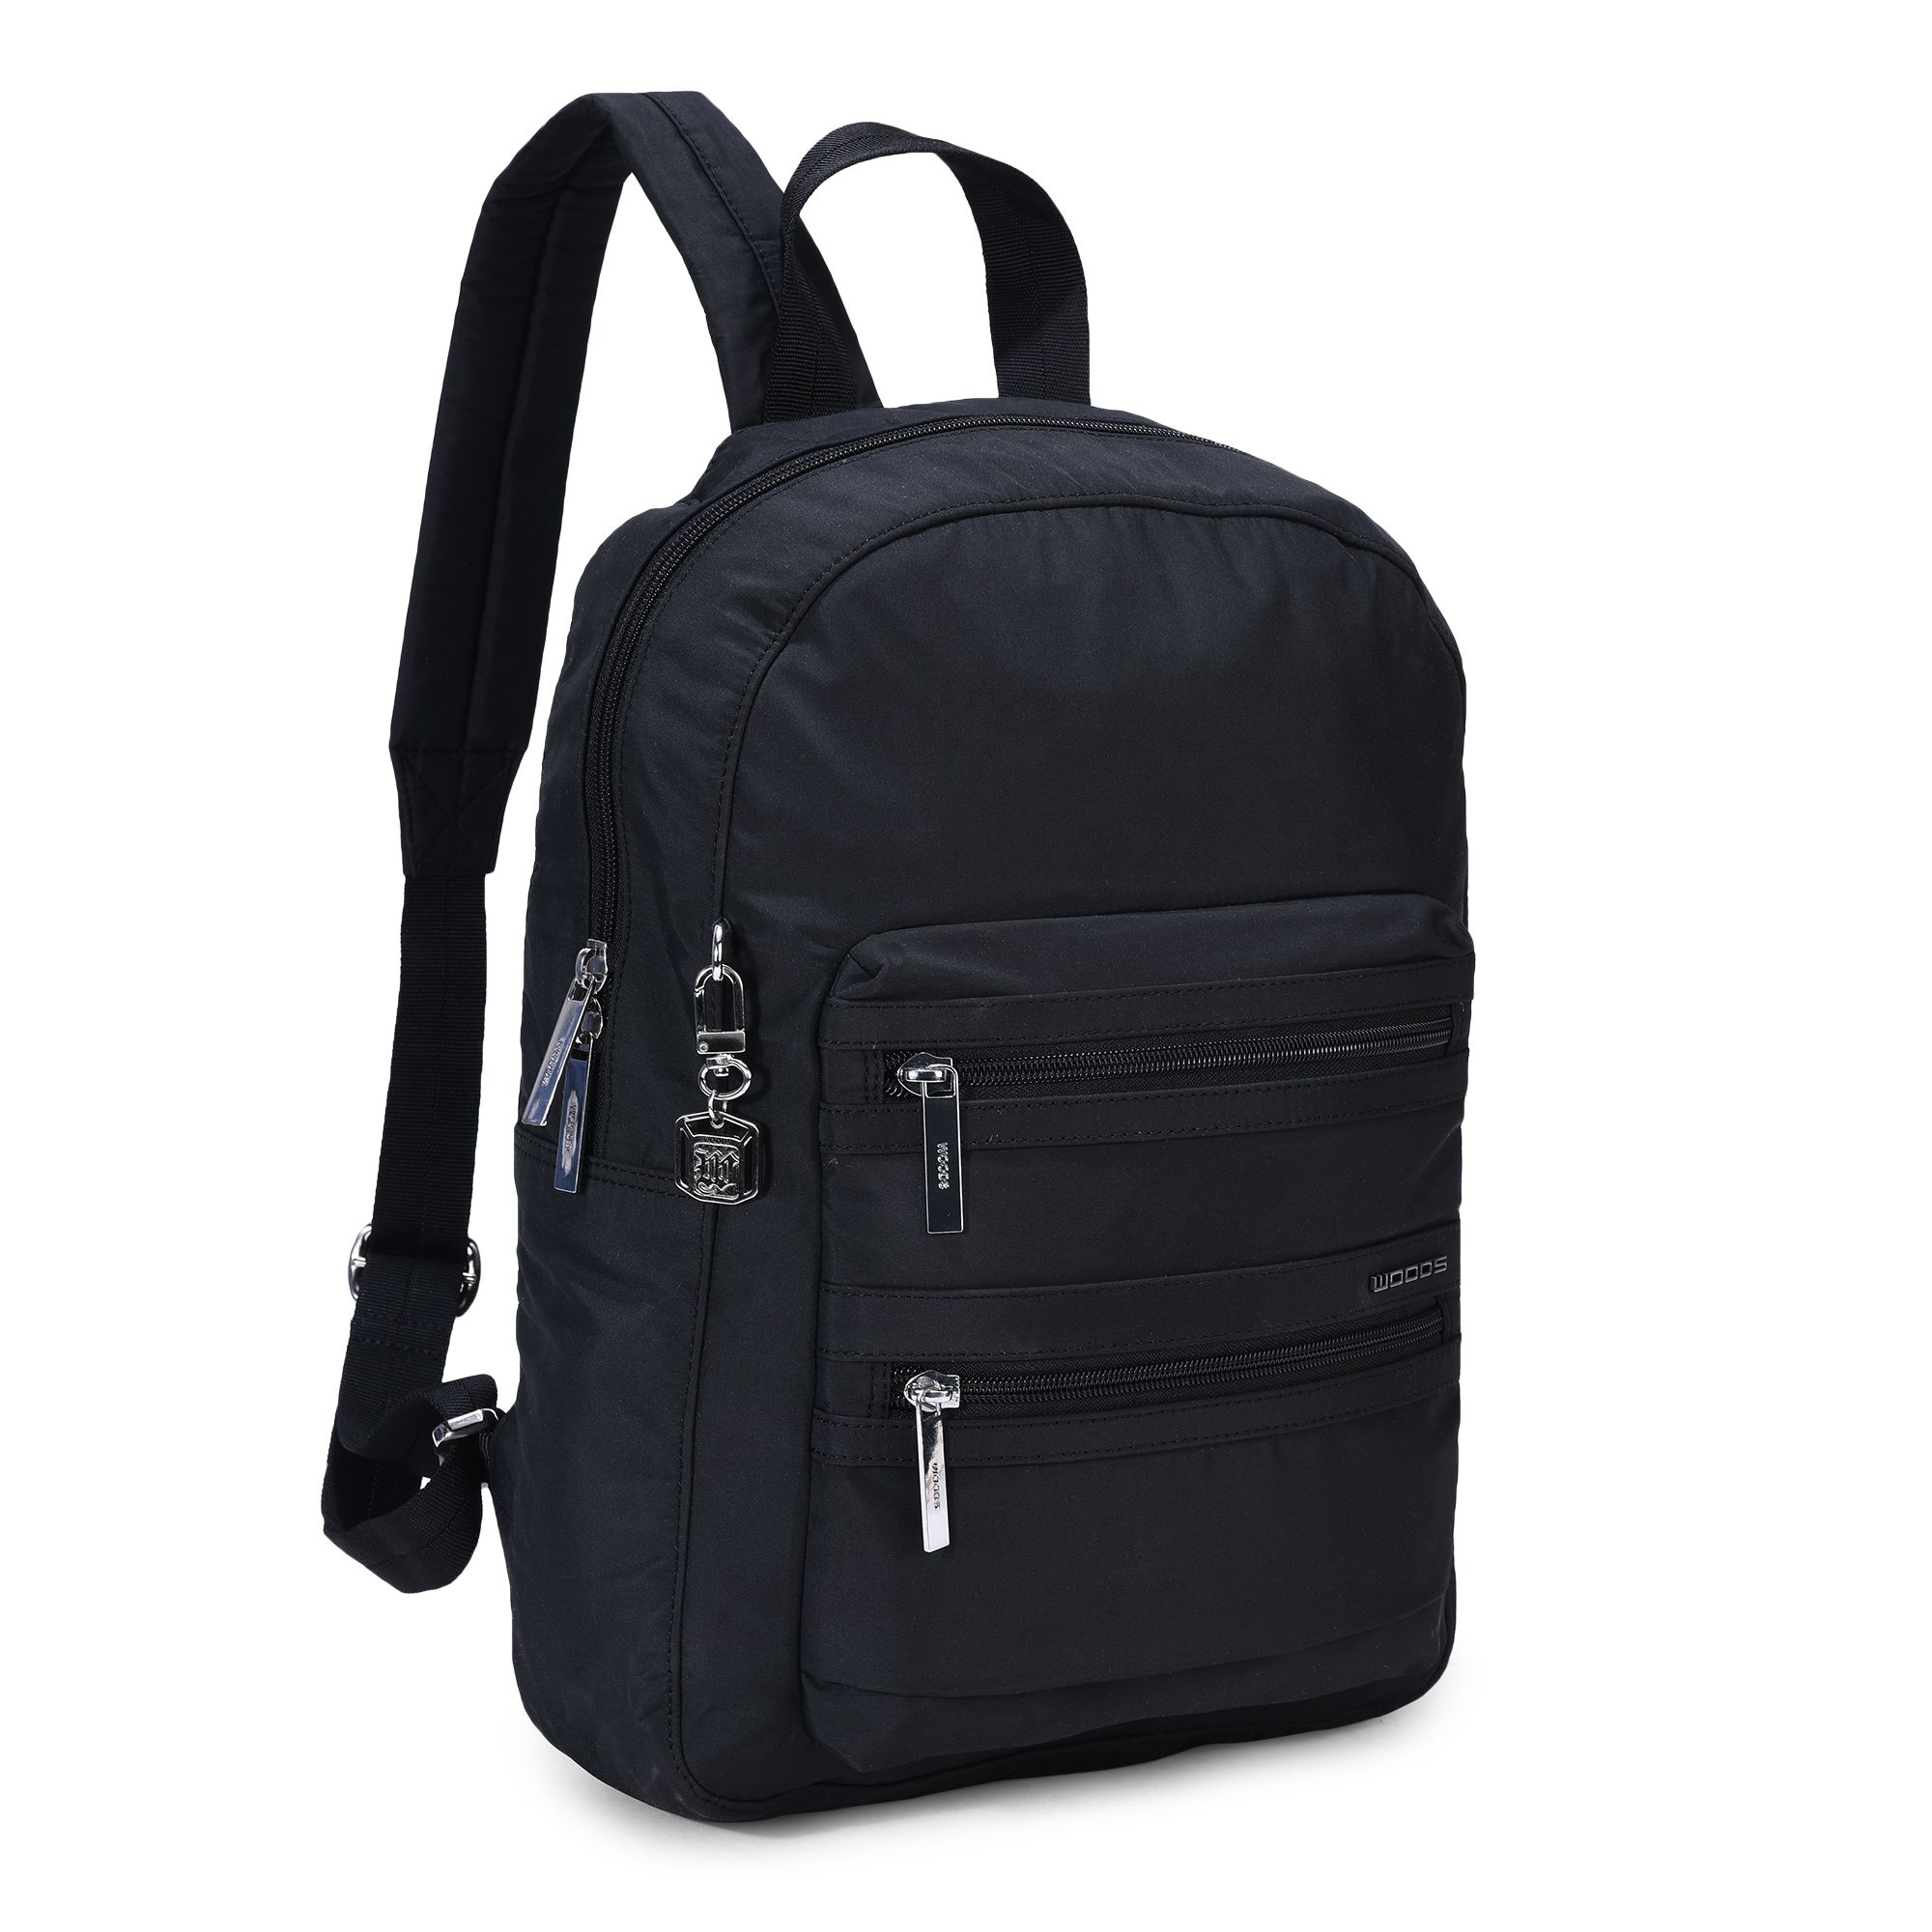 BLACK backpack